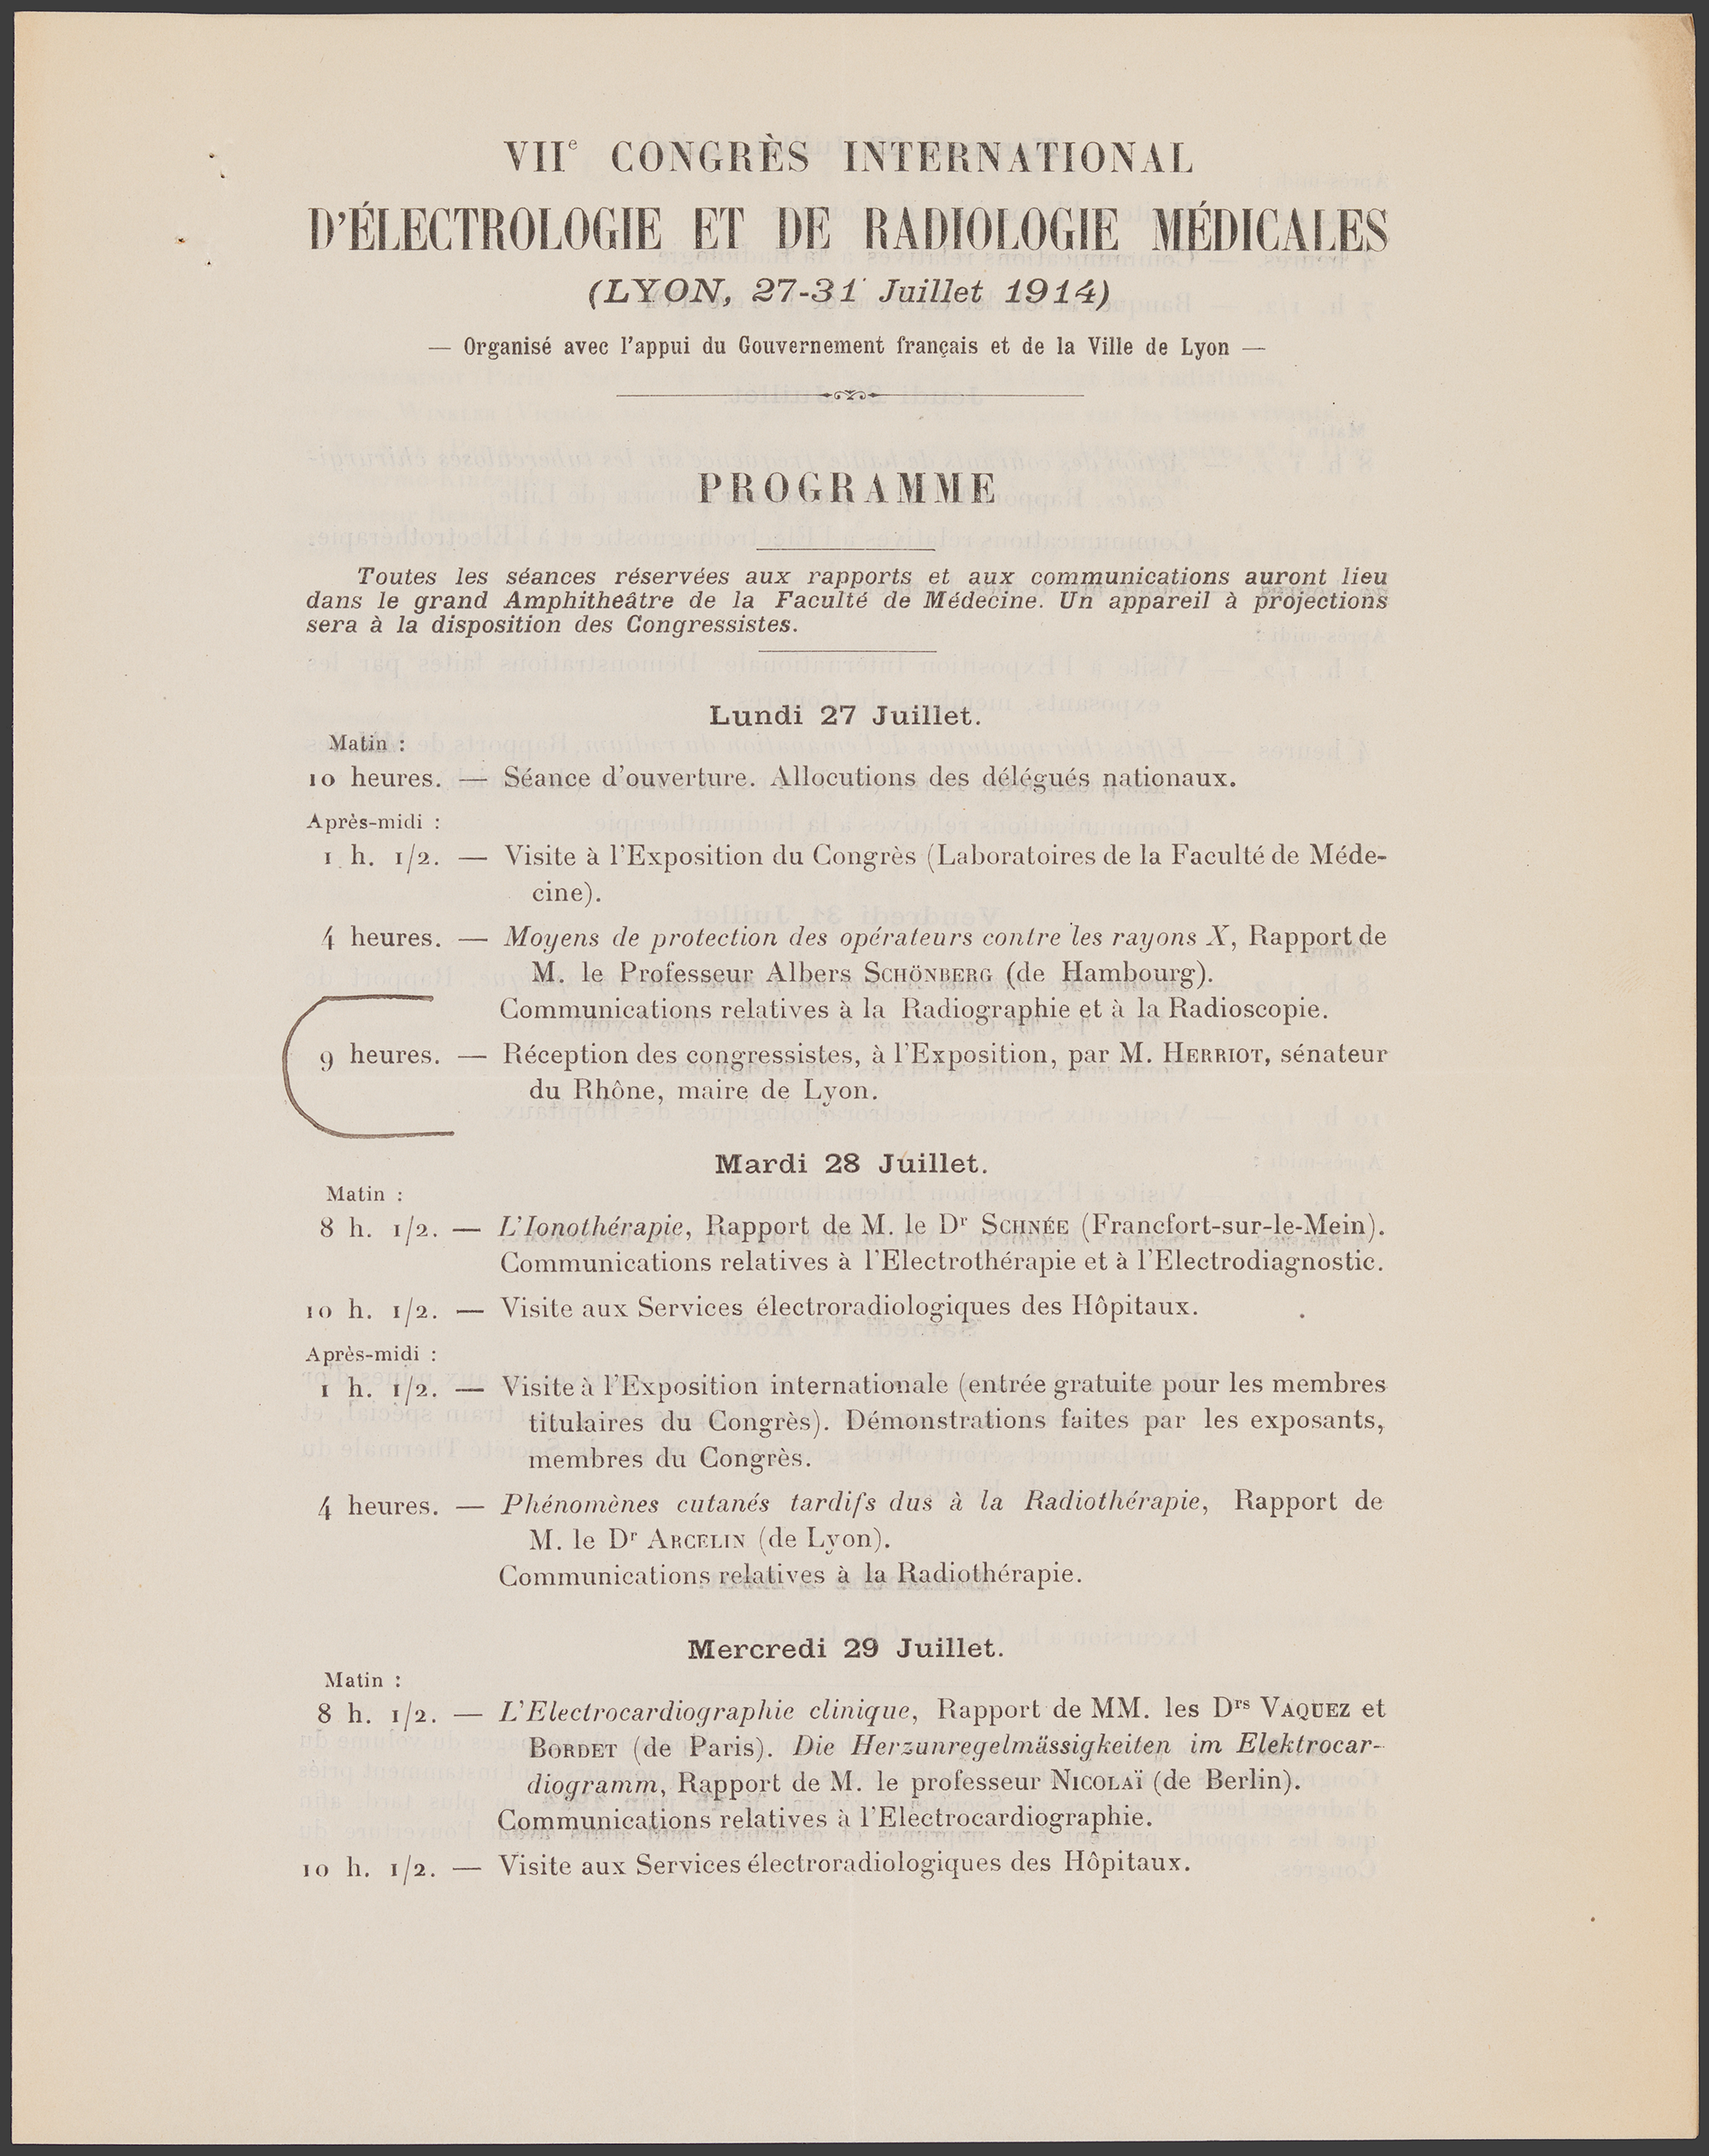 Extrait du programme du VIIe congrès international d’électrologie et de radiologie médicales de Lyon en juillet 1914 - 782WP/73/1